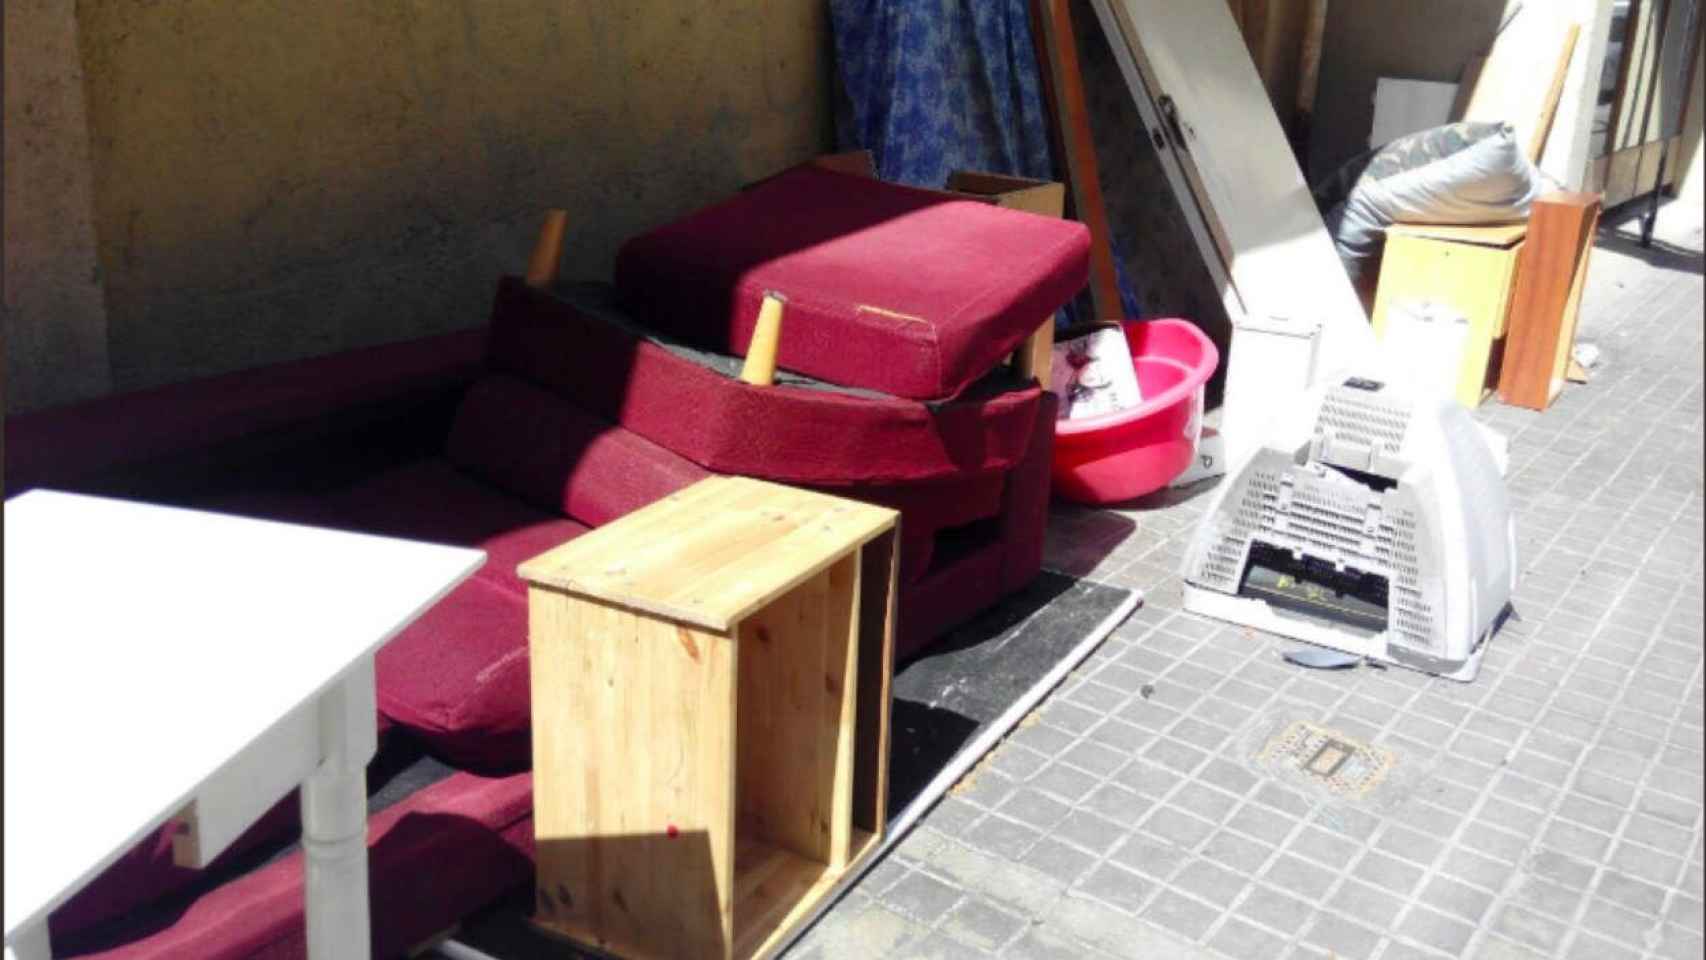 Los vecinos atribuyen a la dejadez de Colau la acumulación de muebles viejos, sofás y trastos en las calles de Sant Martí / M.B-